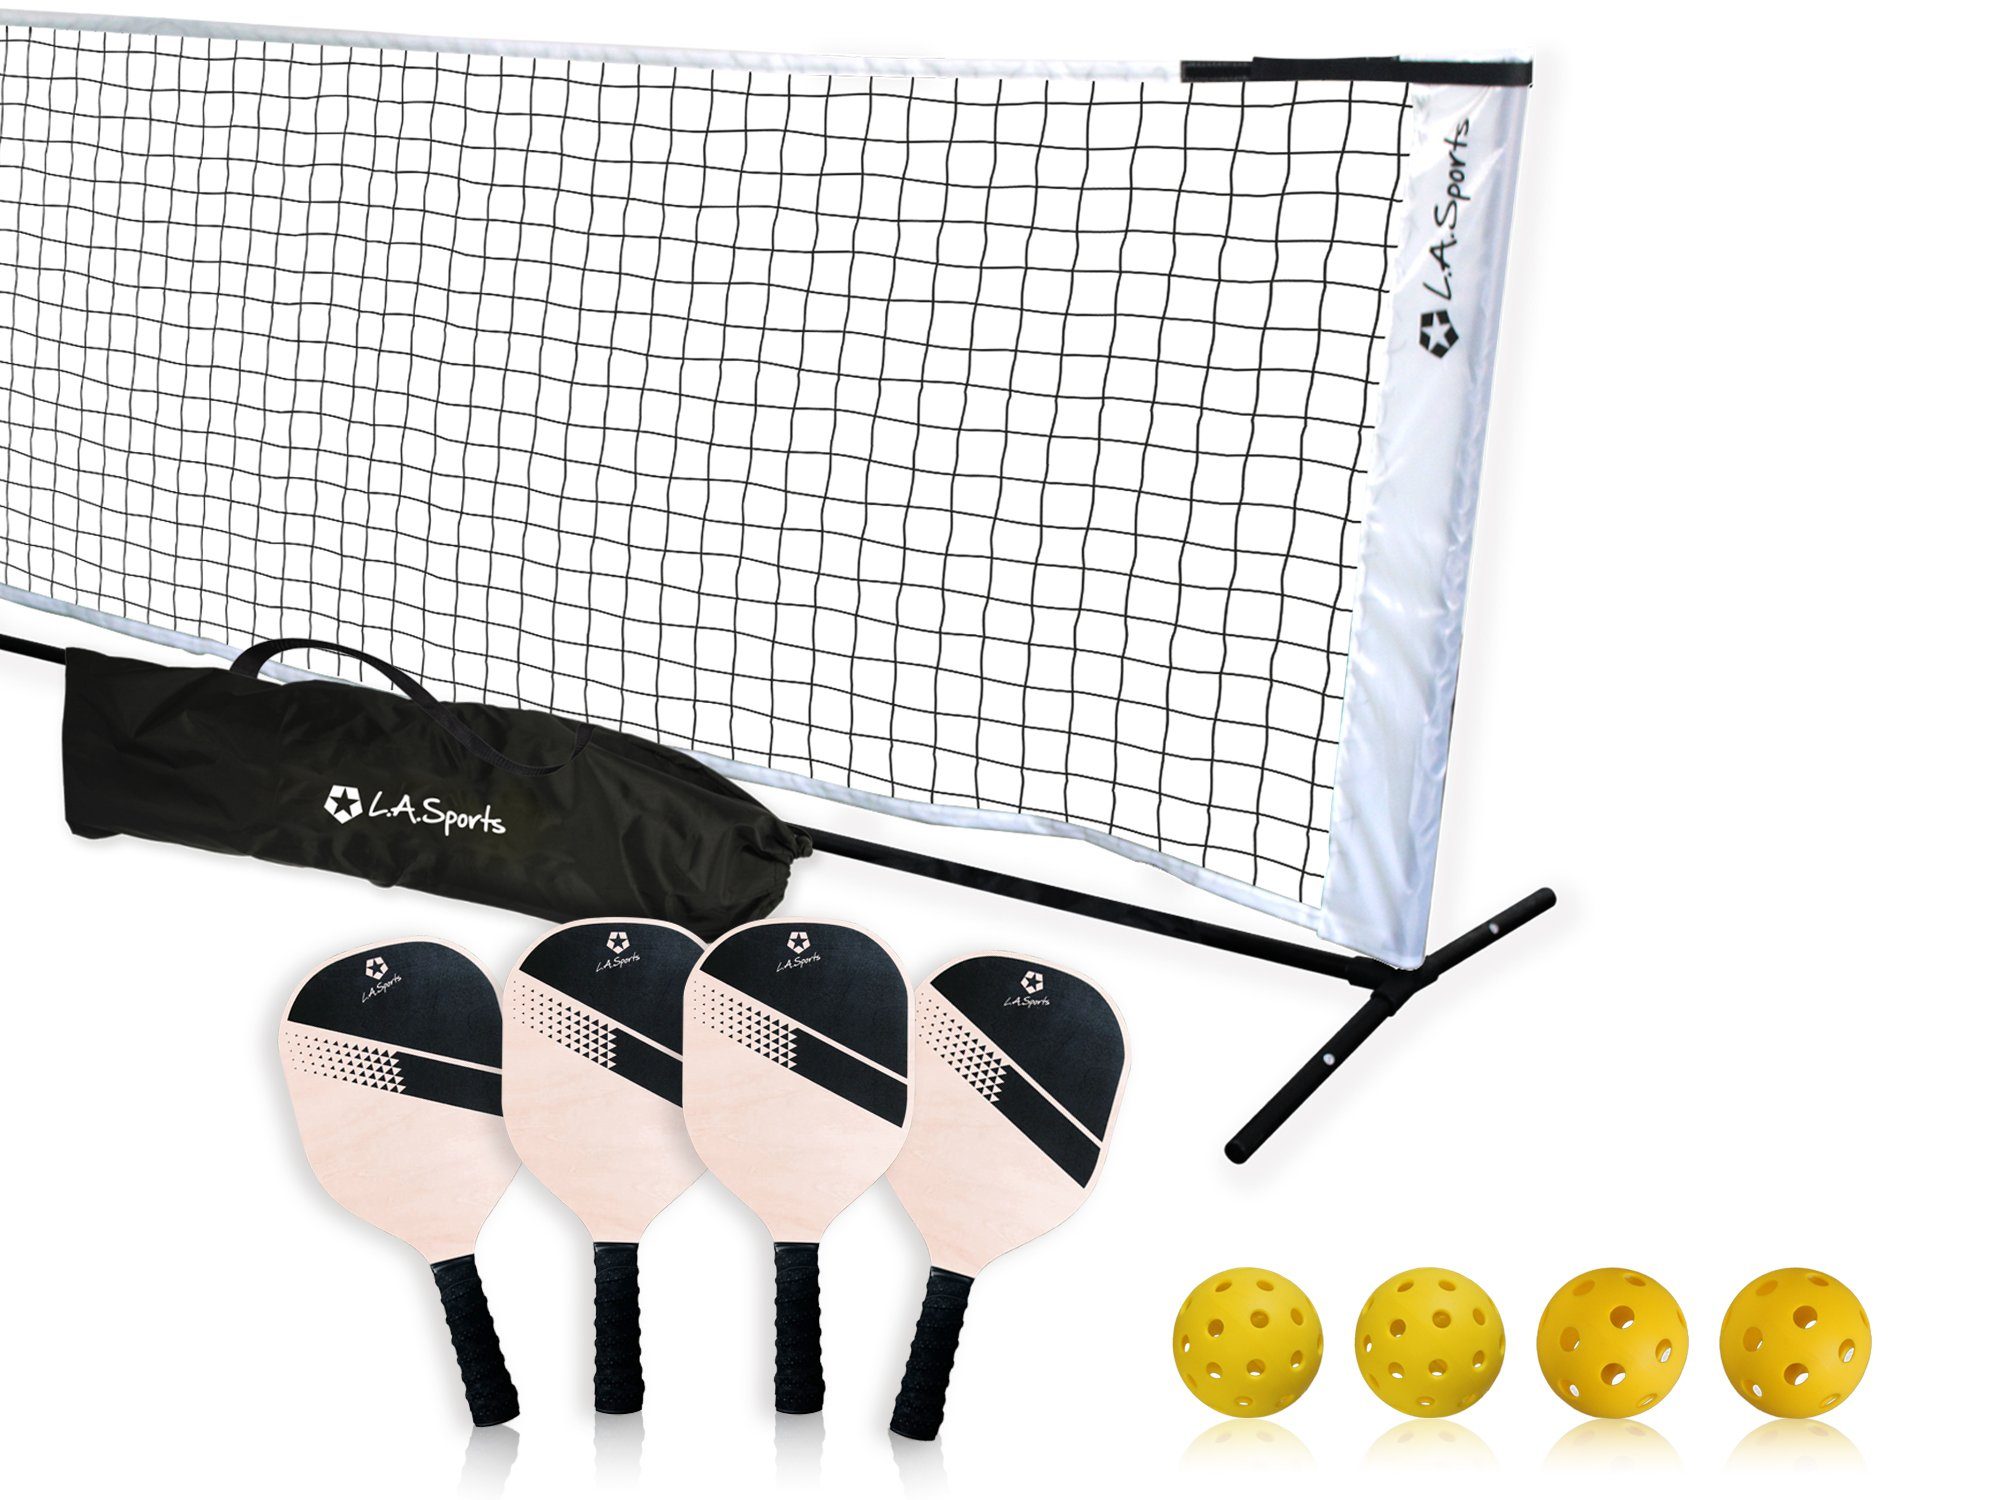 neu Badminton Set für 4 Spieler mit Netz und Zubehör 